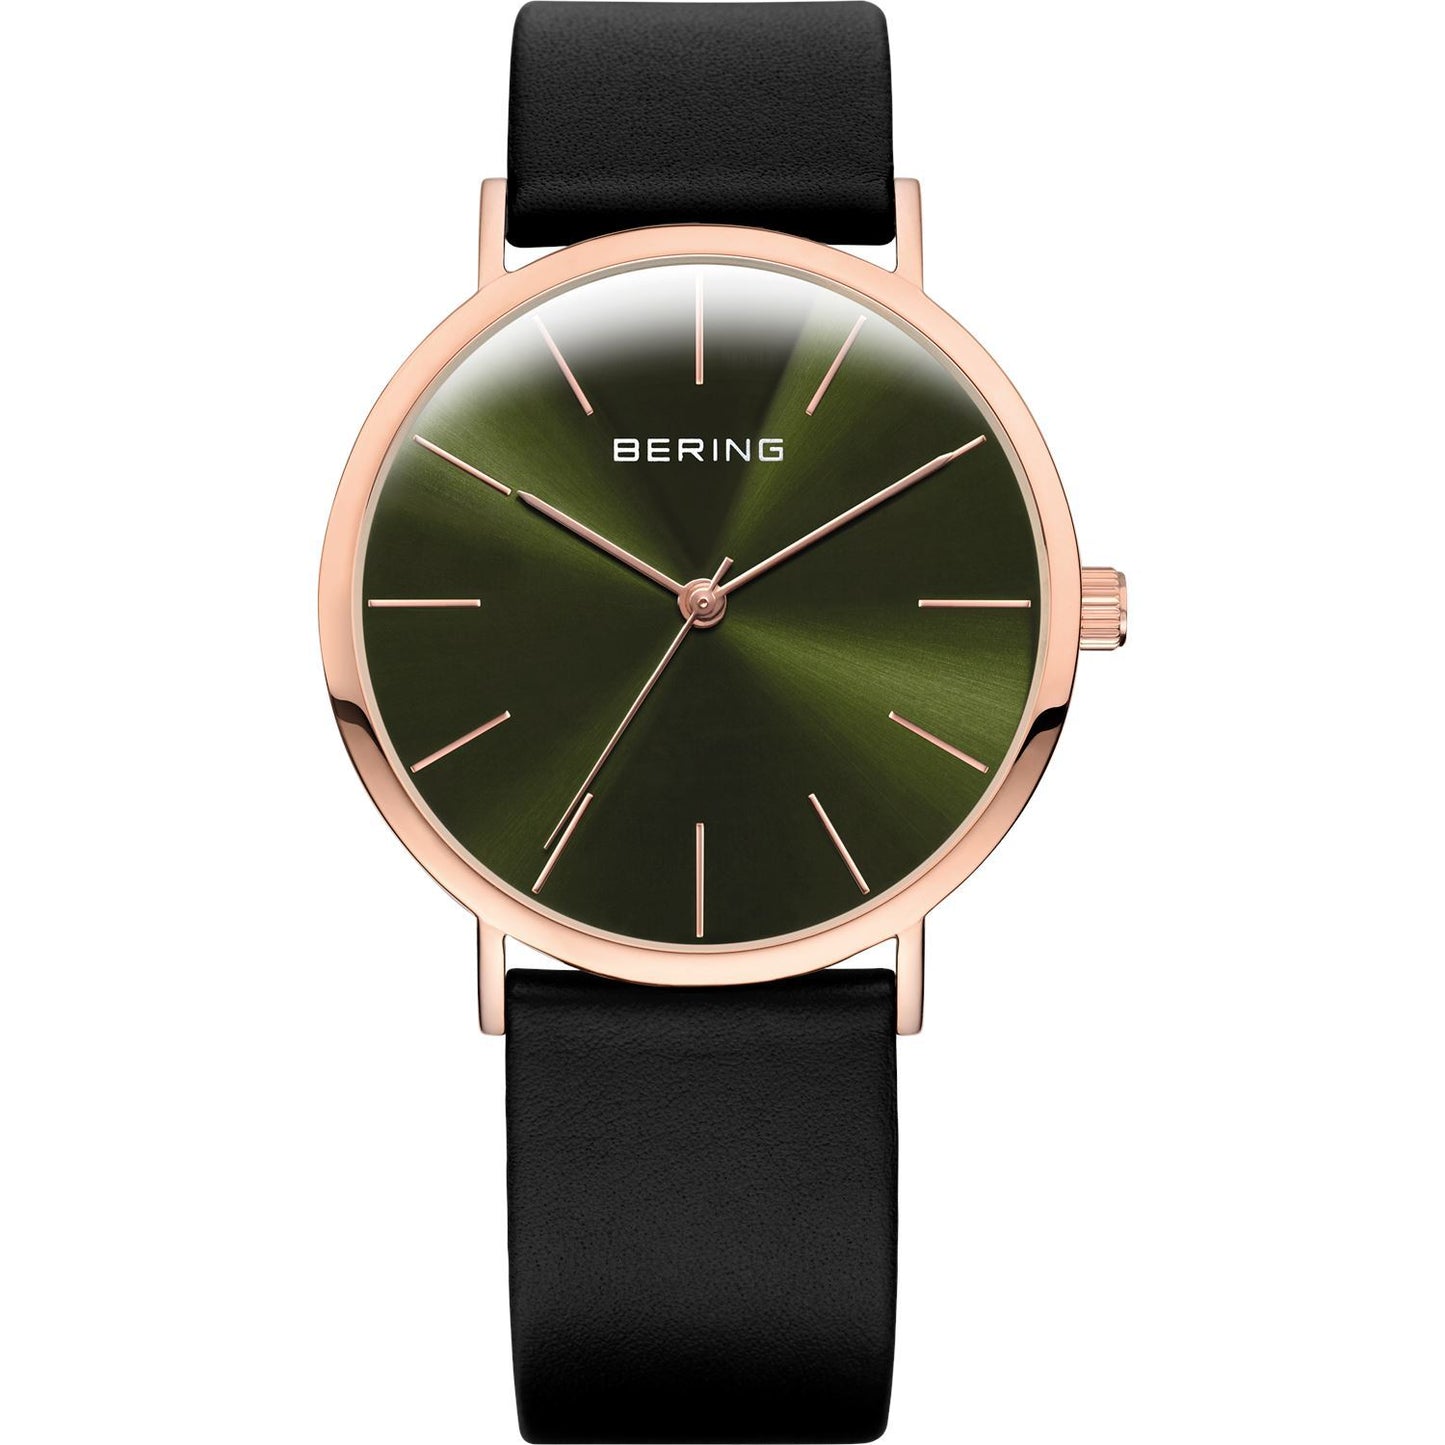 Reloj Bering minimalista mujer cuero negro detalles rosados